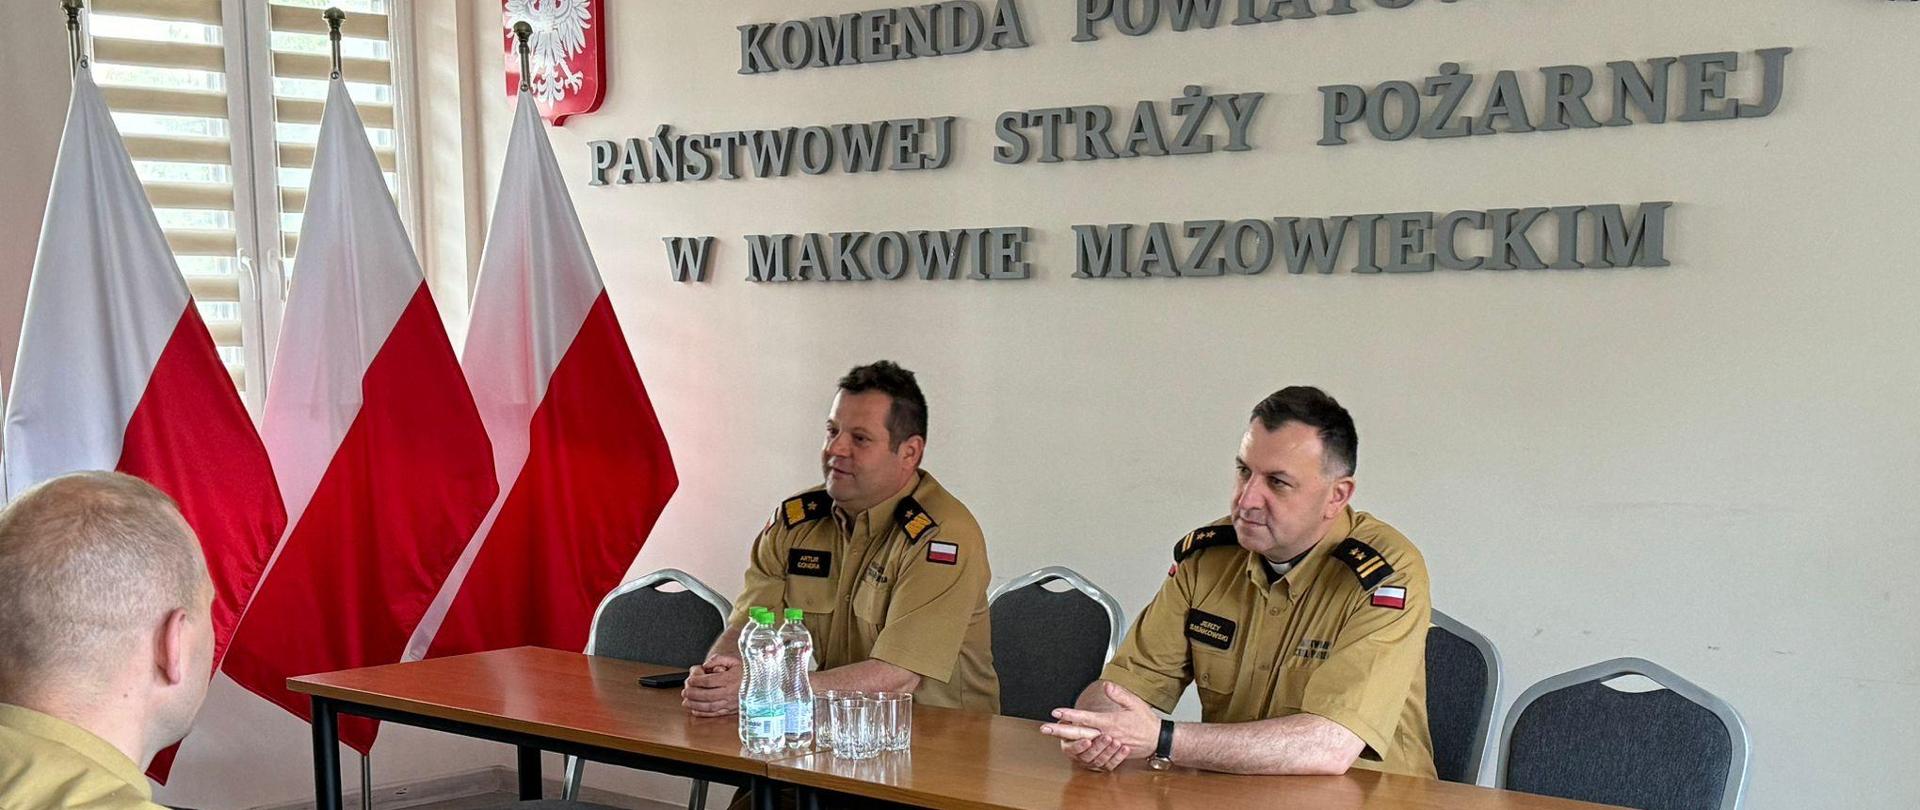 Mazowiecki Komendant Wojewódzki oraz Kapelan Mazowieckich Strażaków siedzą na świetlicy przy stole. Przed nimi siedzą w ławkach strażacy.